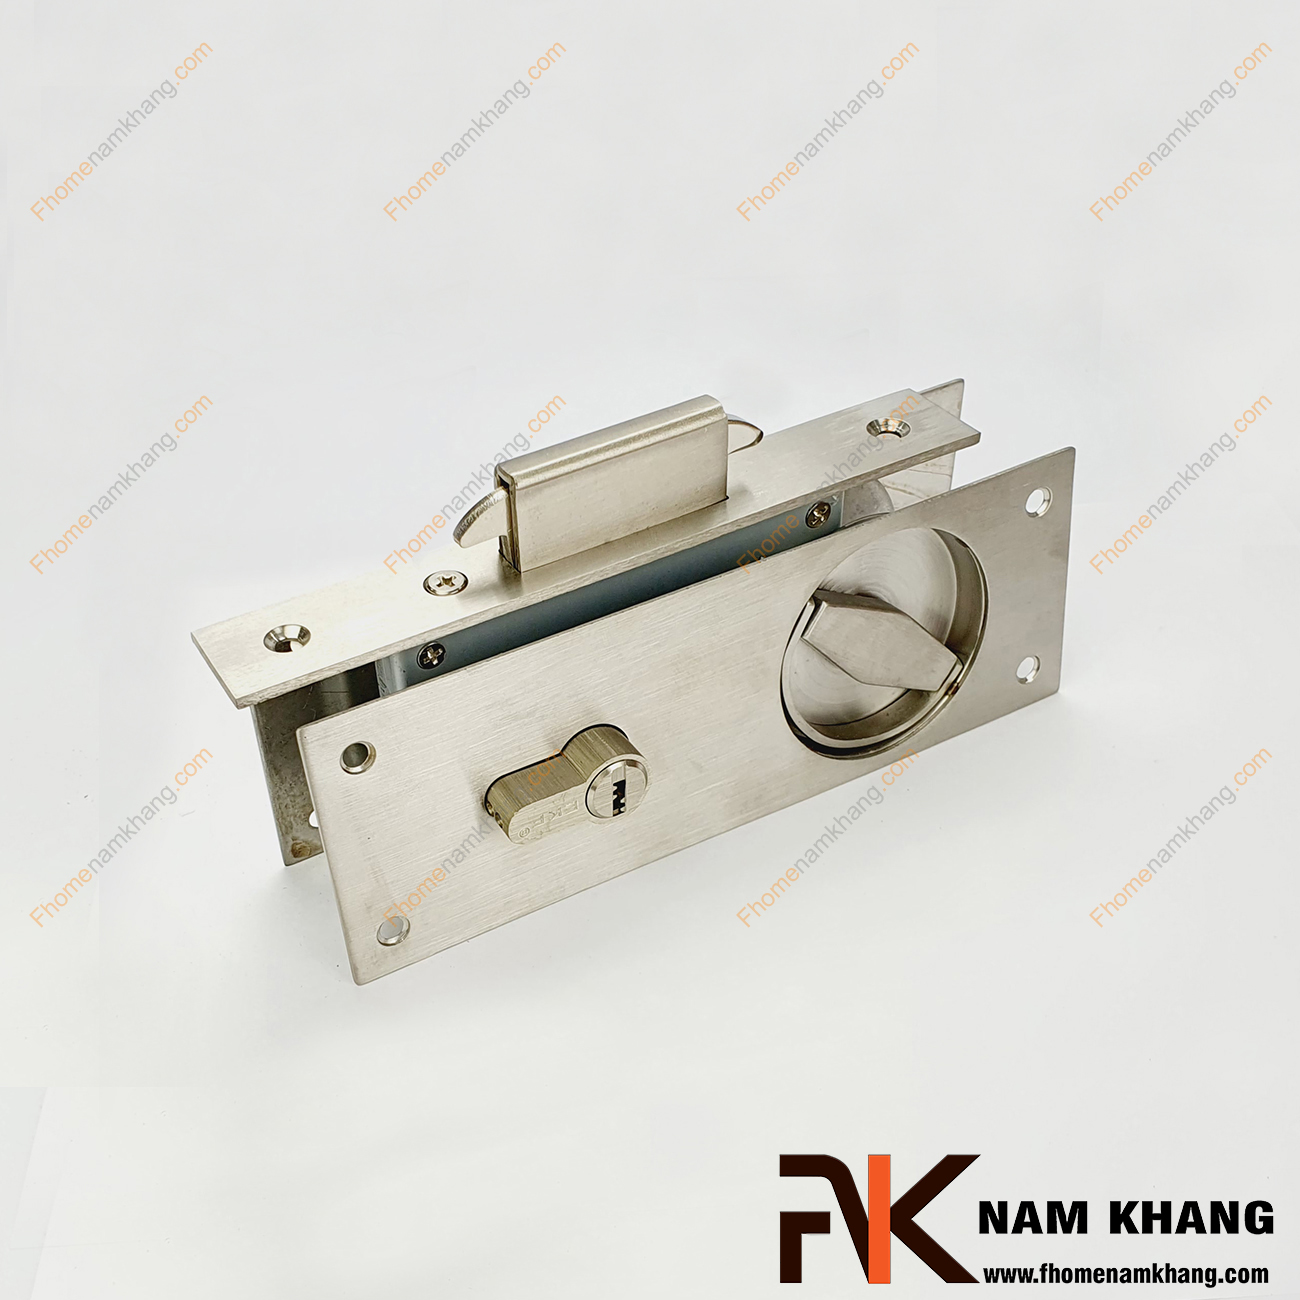 Khóa âm cửa lùa màu inox xước NK557-INOX được sản xuất từ inox cao cấp, là dòng khóa thông dụng và được ưa chuộng sử dụng tại thị trường Việt Nam.